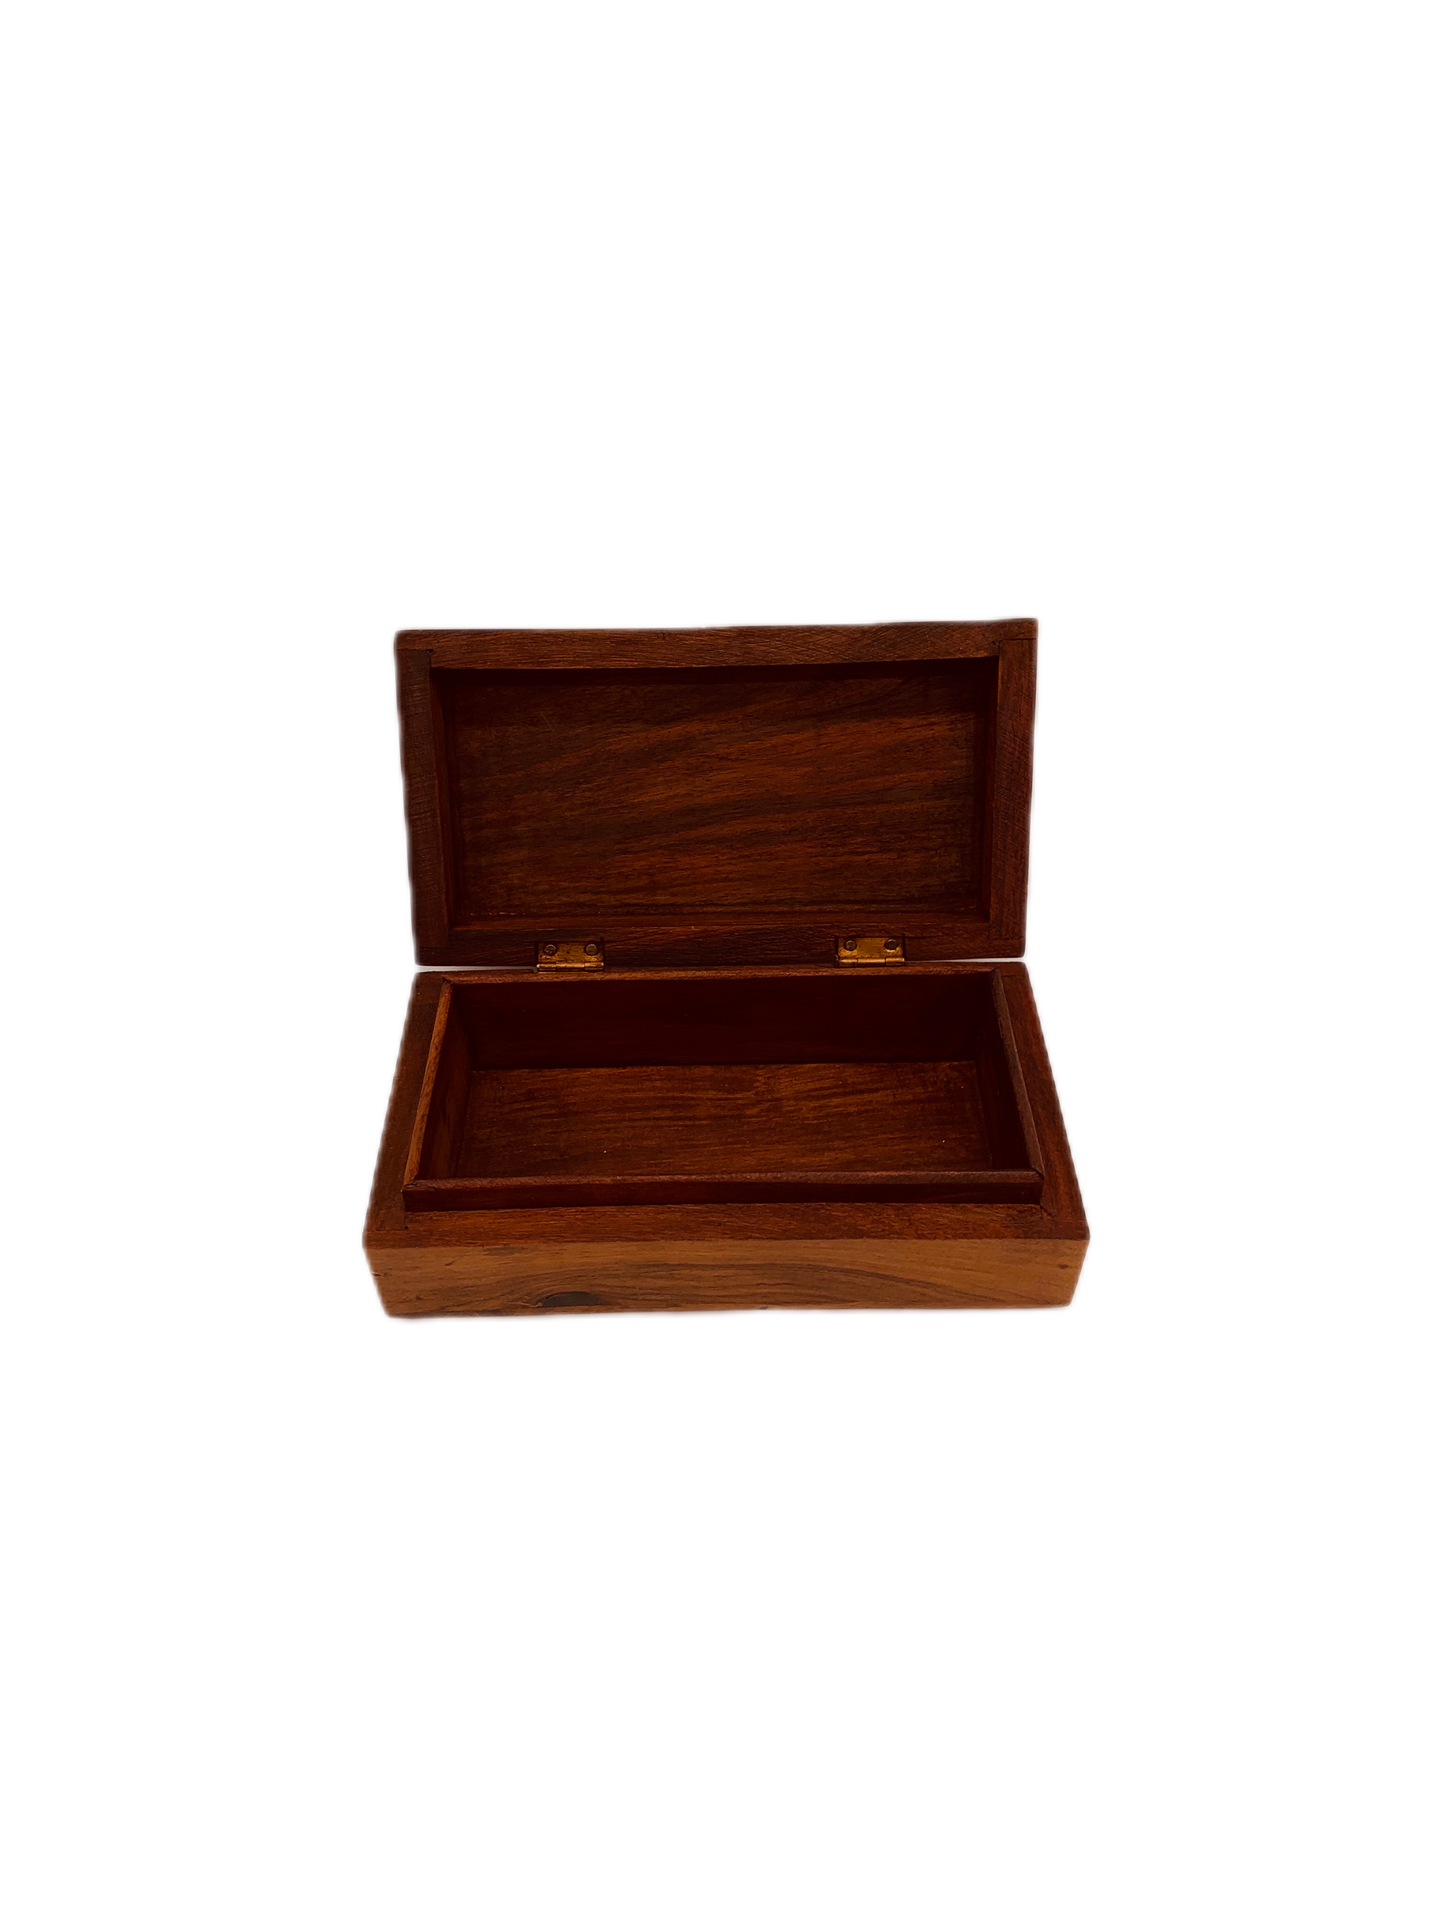 Vintage wooden box inlaid malachite gem